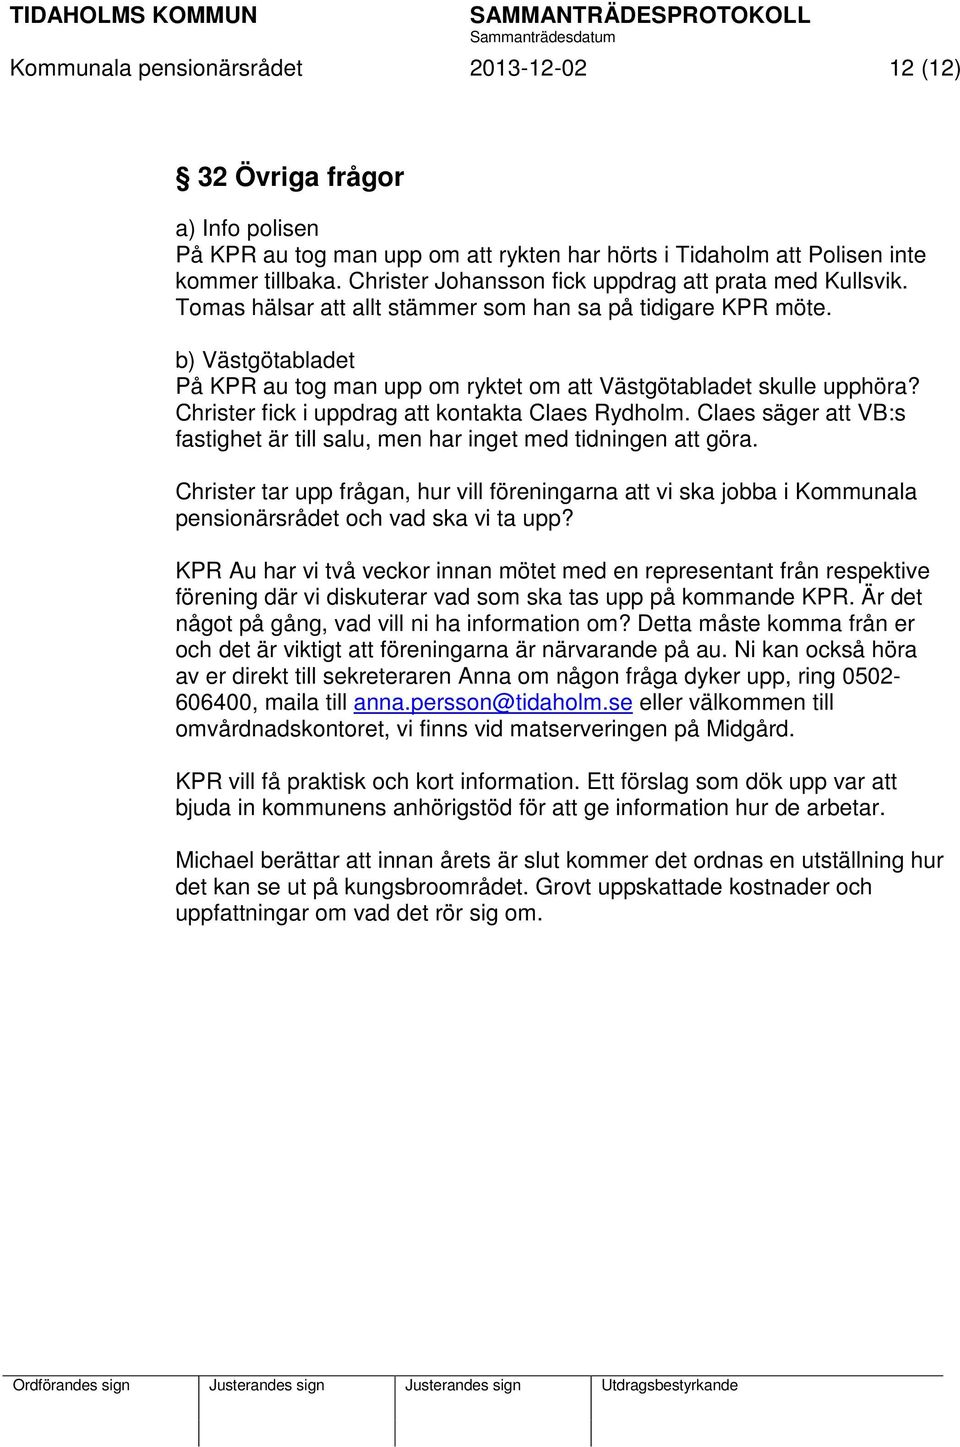 b) Västgötabladet På KPR au tog man upp om ryktet om att Västgötabladet skulle upphöra? Christer fick i uppdrag att kontakta Claes Rydholm.